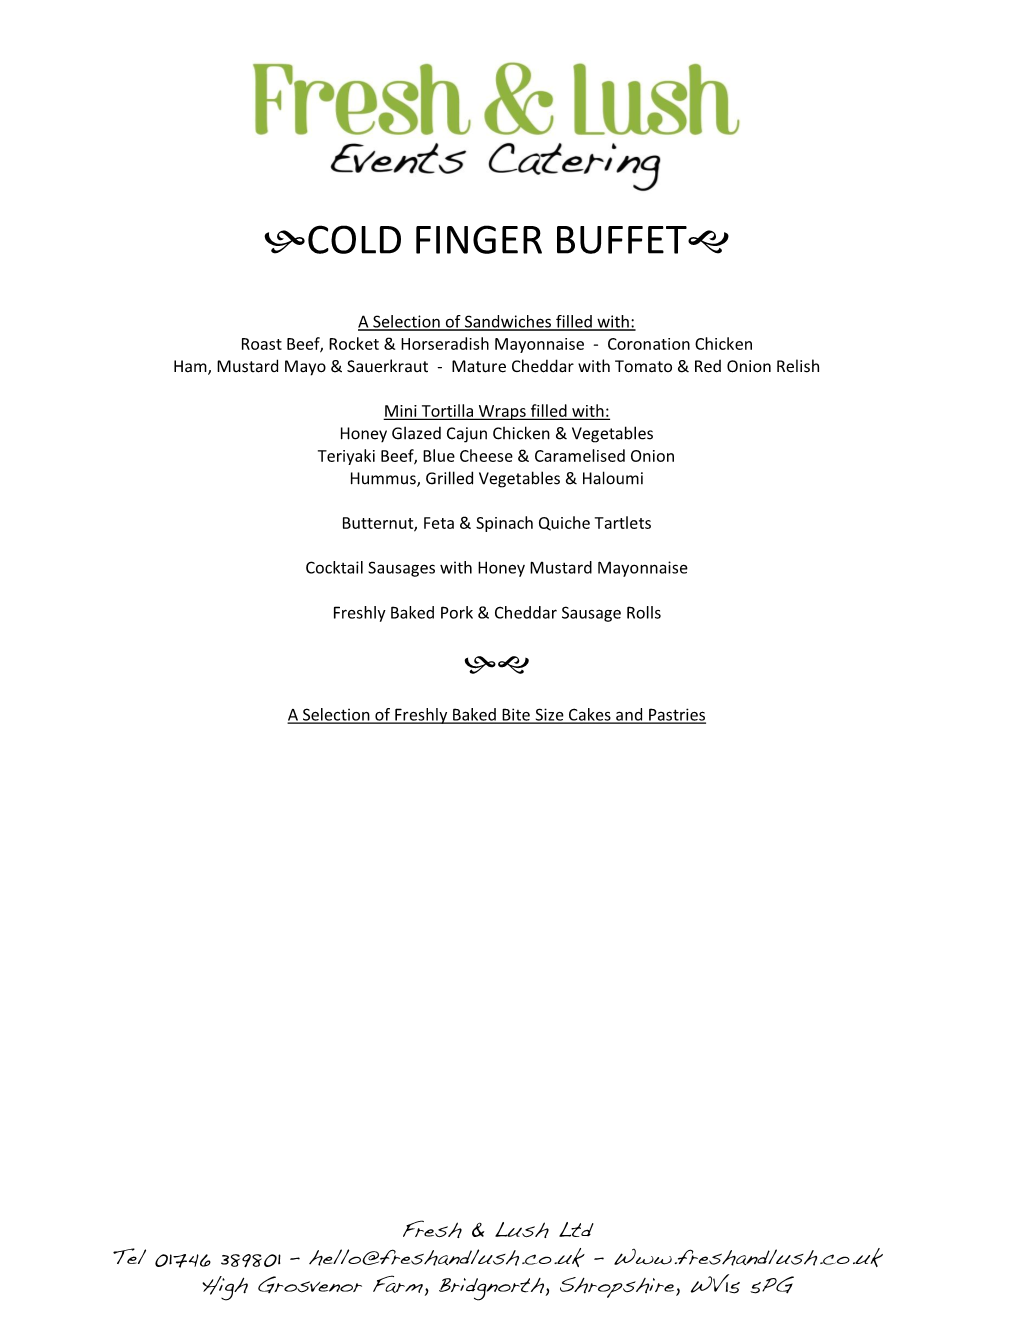 Cold Finger Buffet